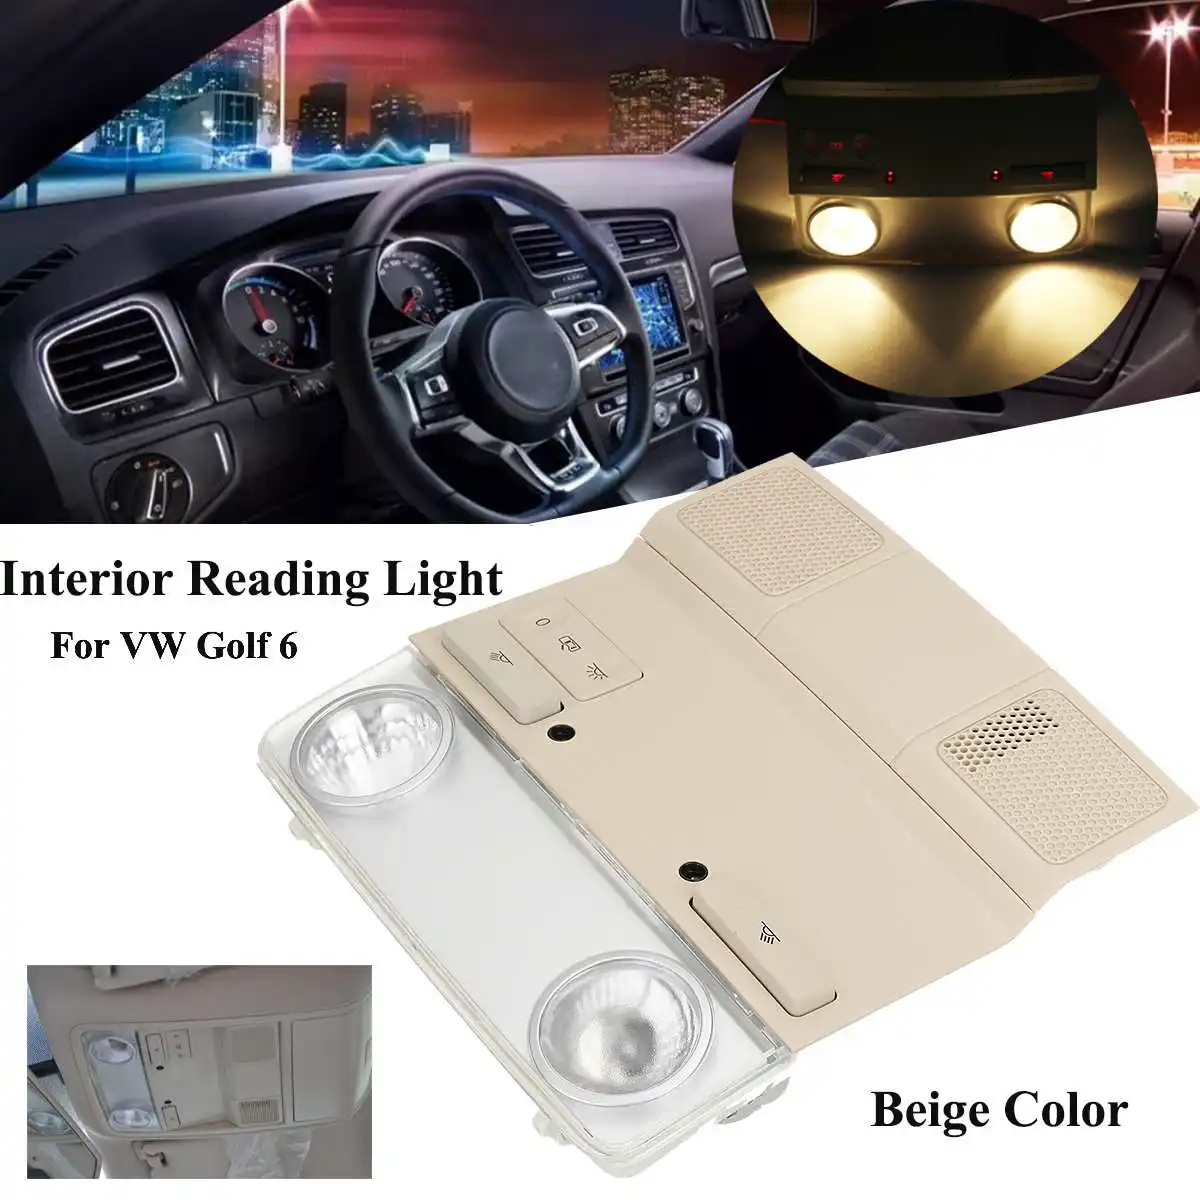 Потолочный светильник для чтения в салоне автомобиля, лампа на переднюю крышу, красный светильник для Volkswagen VW Golf6 - Испускаемый цвет: Beige